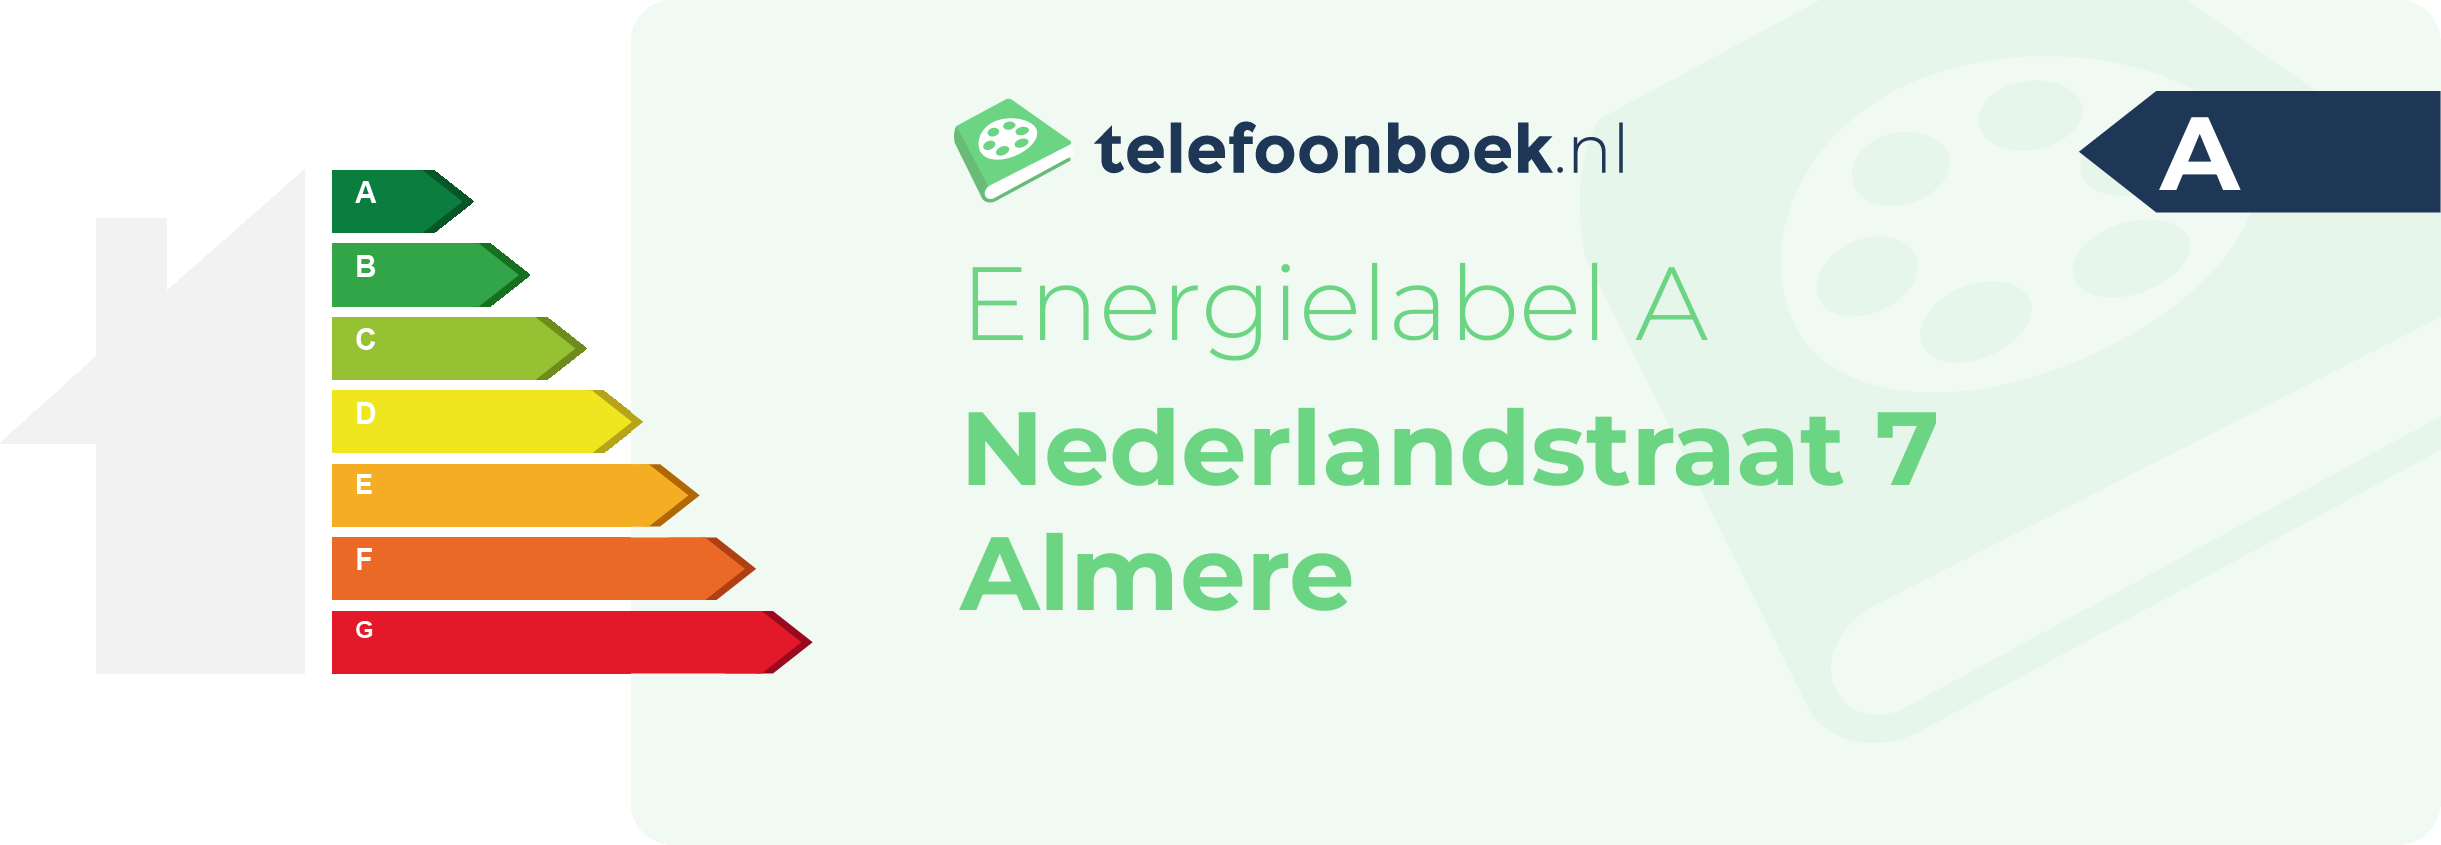 Energielabel Nederlandstraat 7 Almere